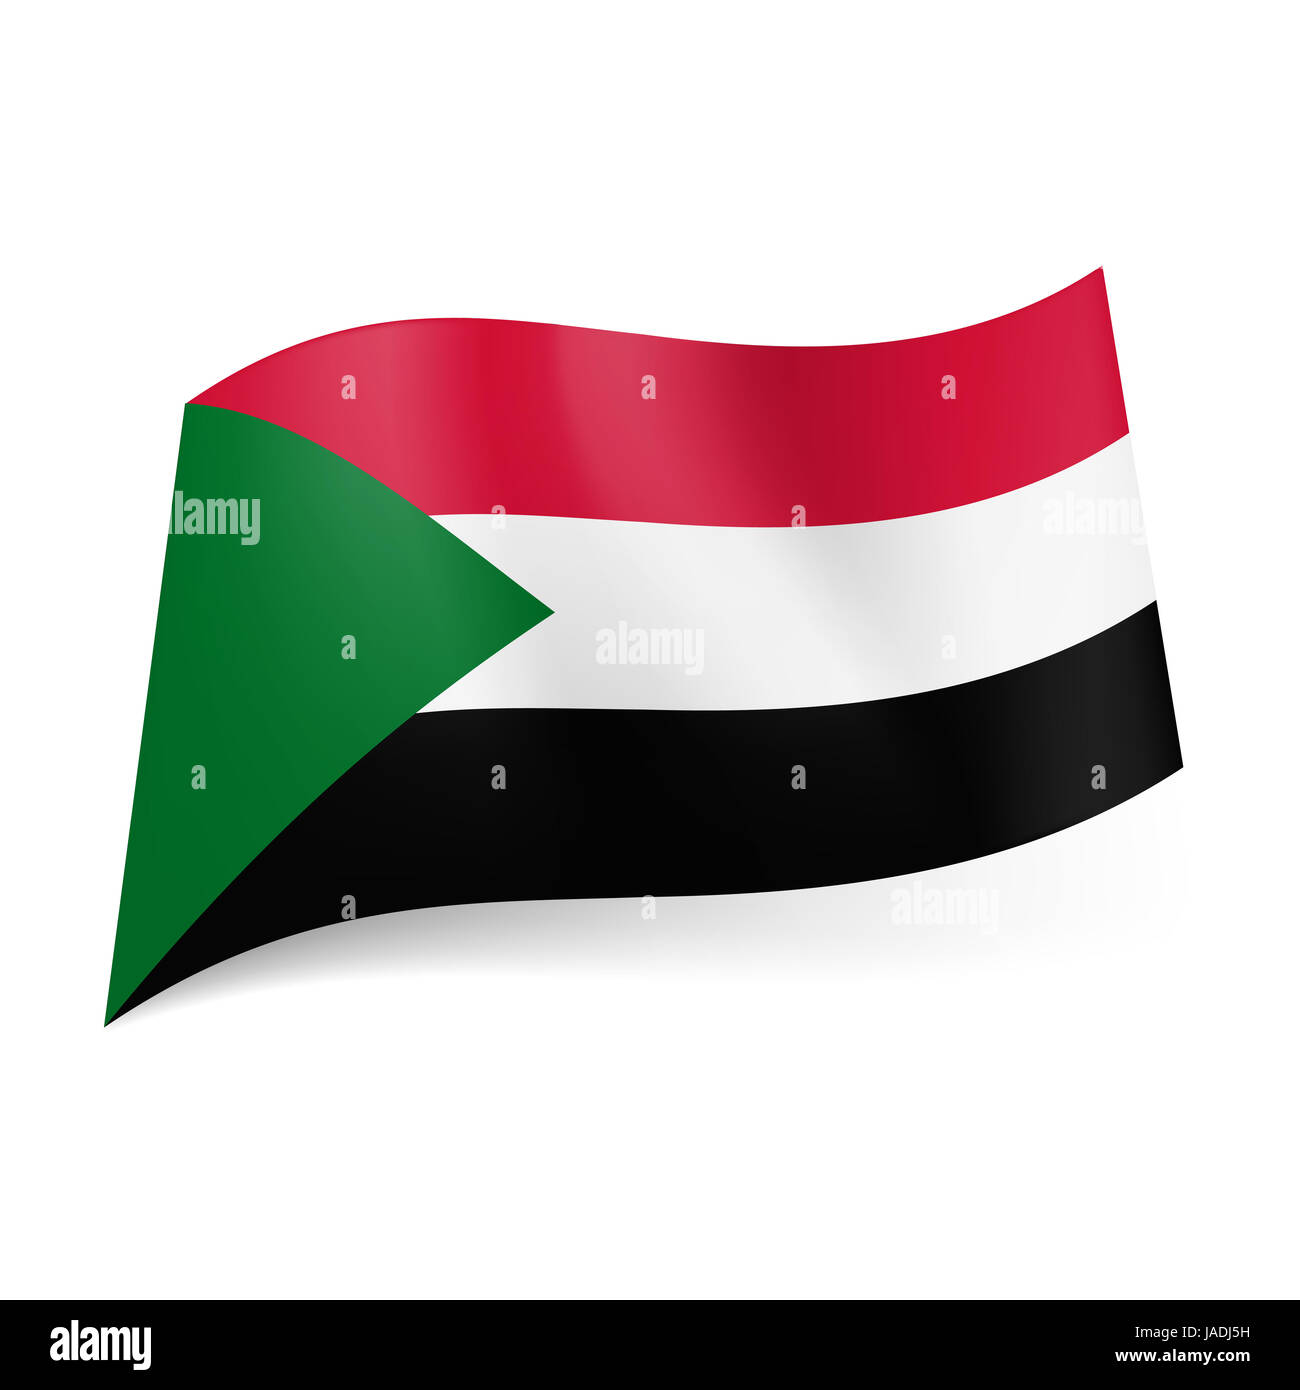 Flagge des Sudan: rot-weiß-schwarzen Querstreifen mit grünen Dreieck auf  der linken Seite Stockfotografie - Alamy